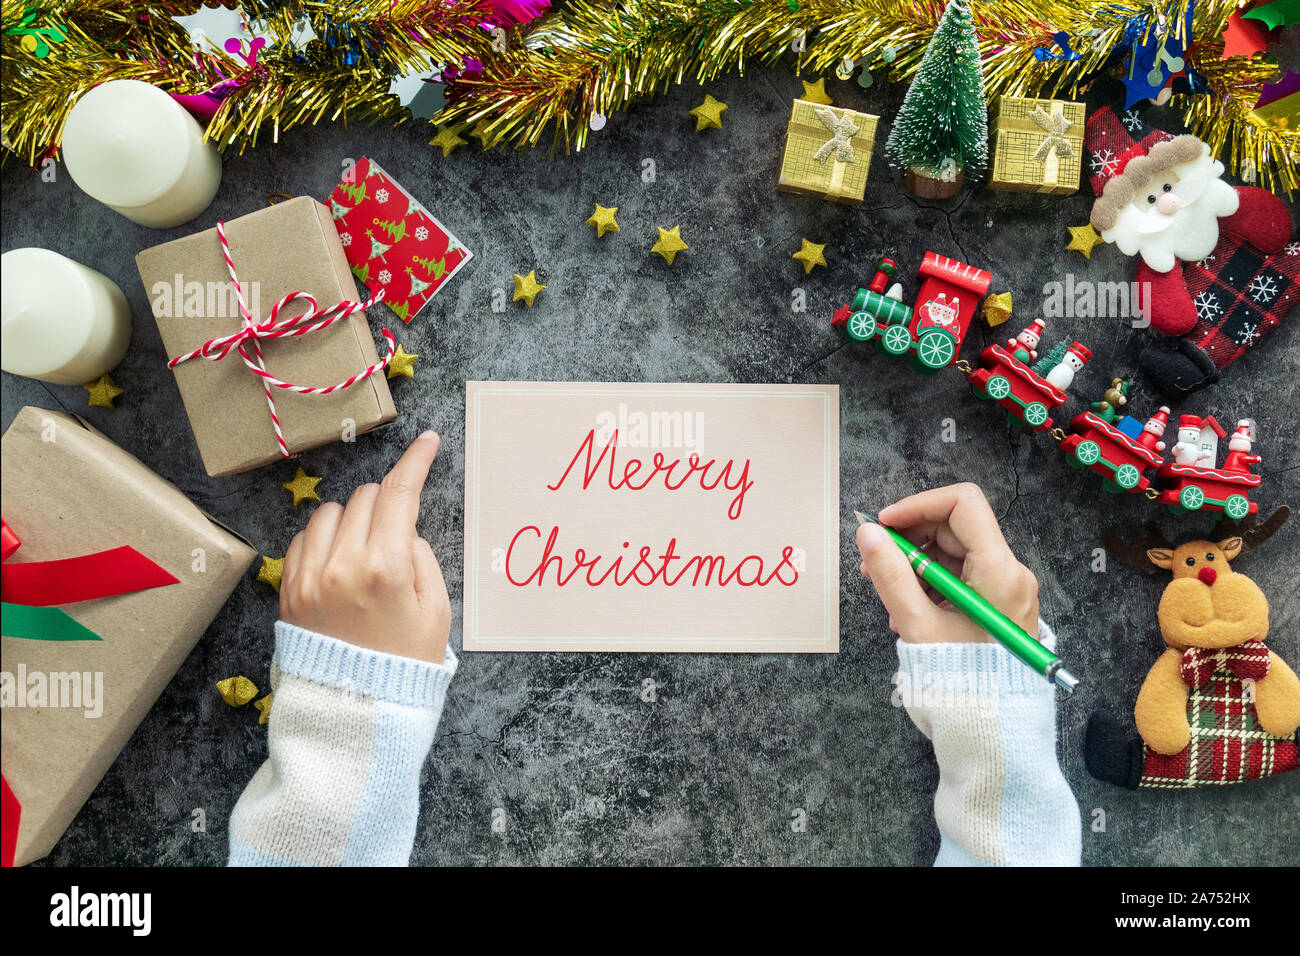 La main Joyeux Noël sur carte de souhaits pendant la période de Noël et de cadeaux, décorations festival avec ornement de Noël sur la table Banque D'Images